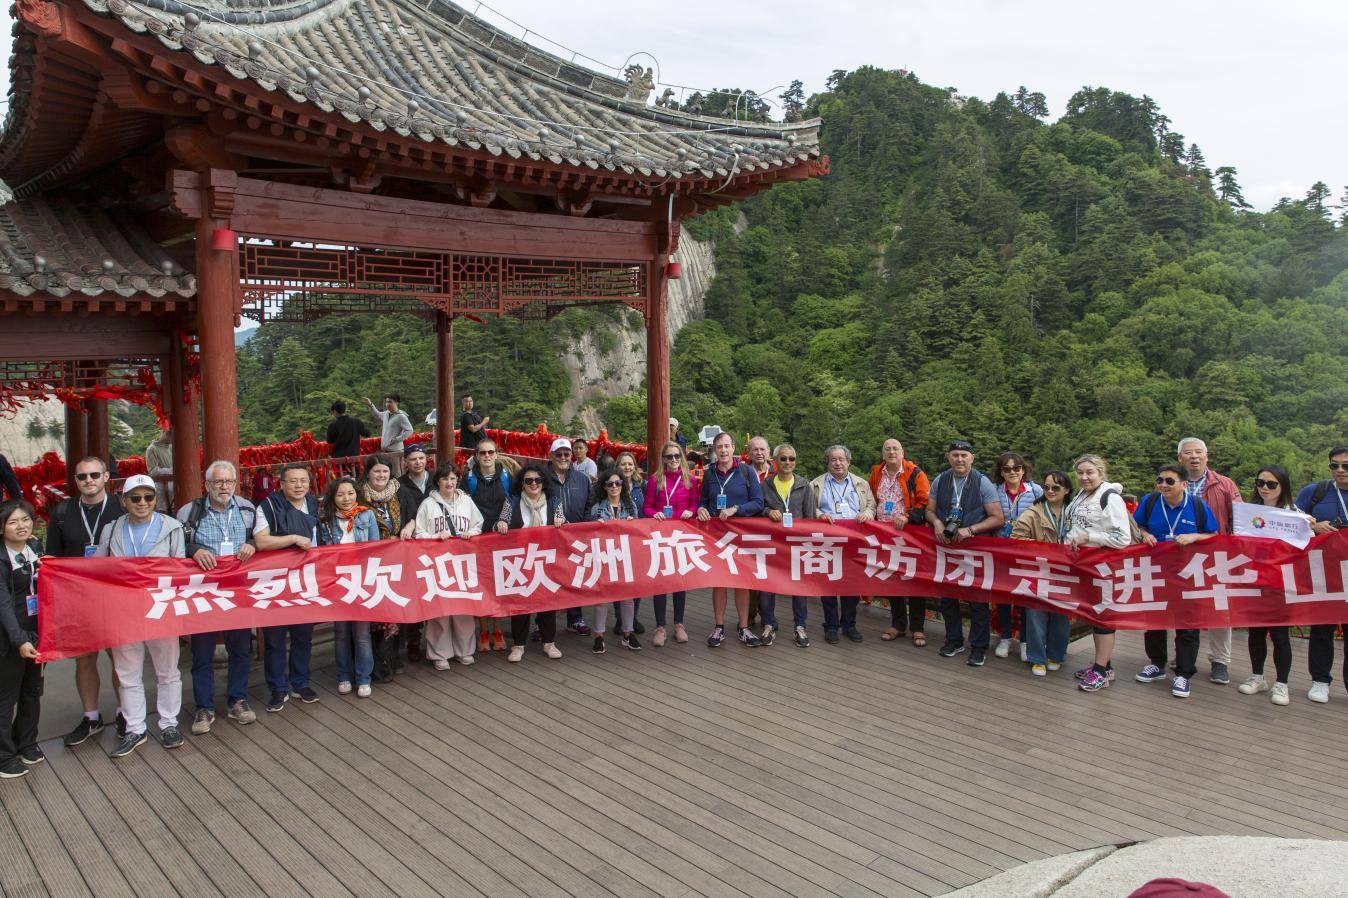   欧洲旅行社代表团参观华山风景区——华山迎来欧洲旅行社共同探索旅游的新机遇。